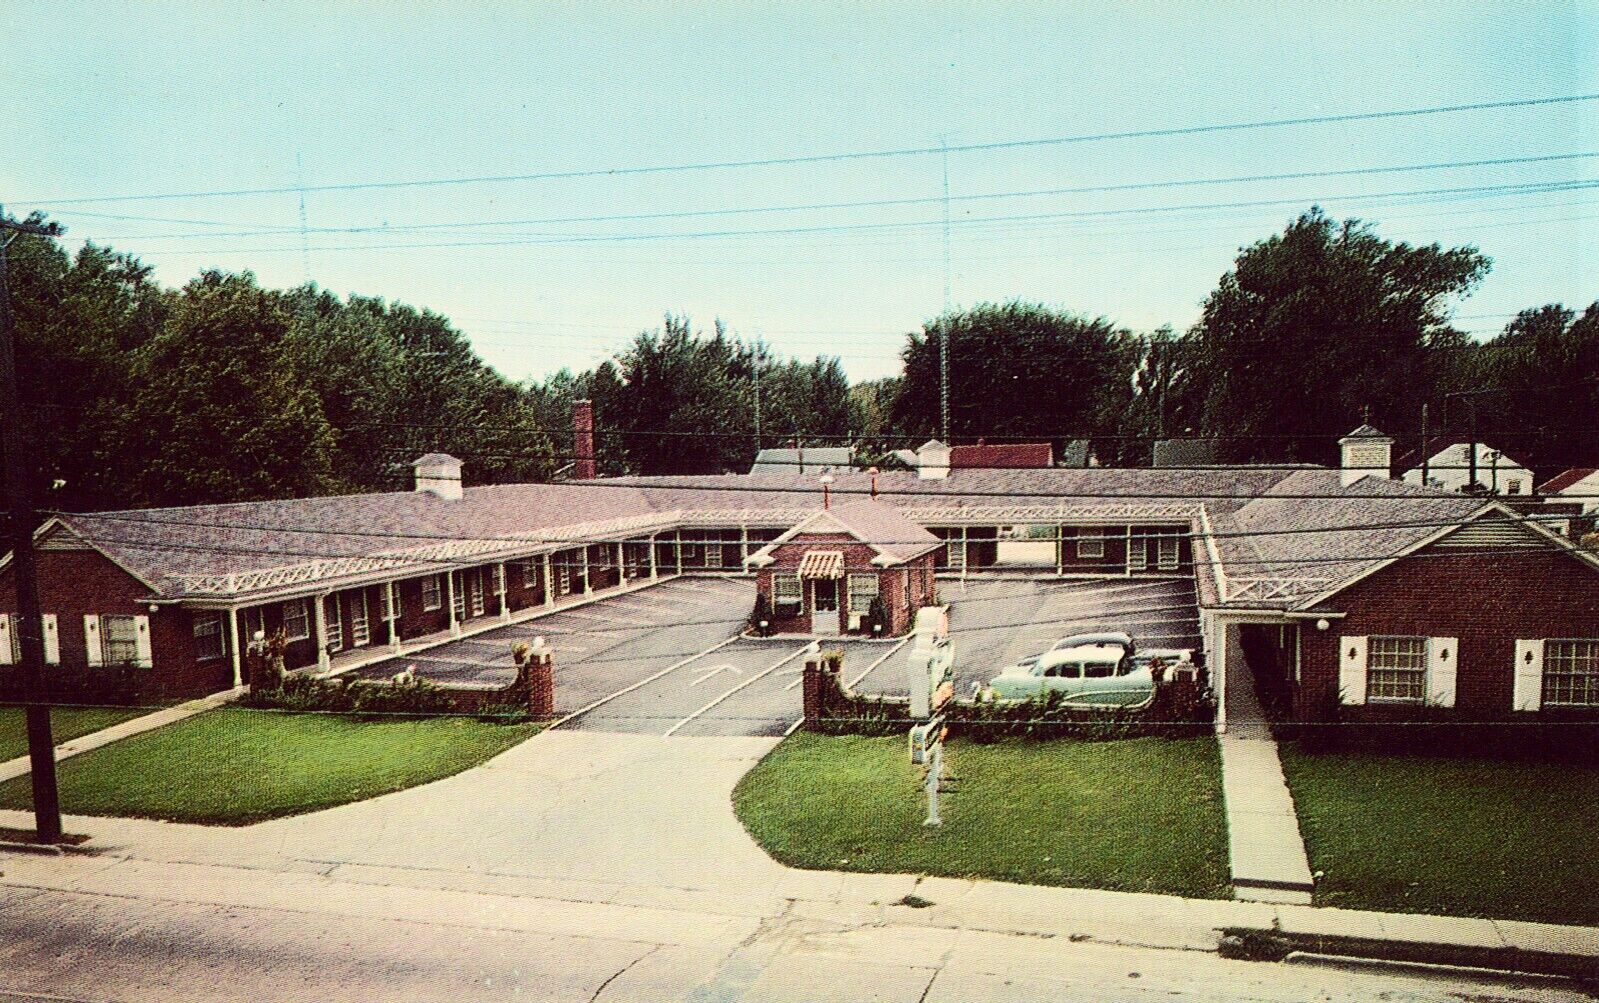 Yording\'s Motel - Jacksonville, Illinois - Vintage Postcard